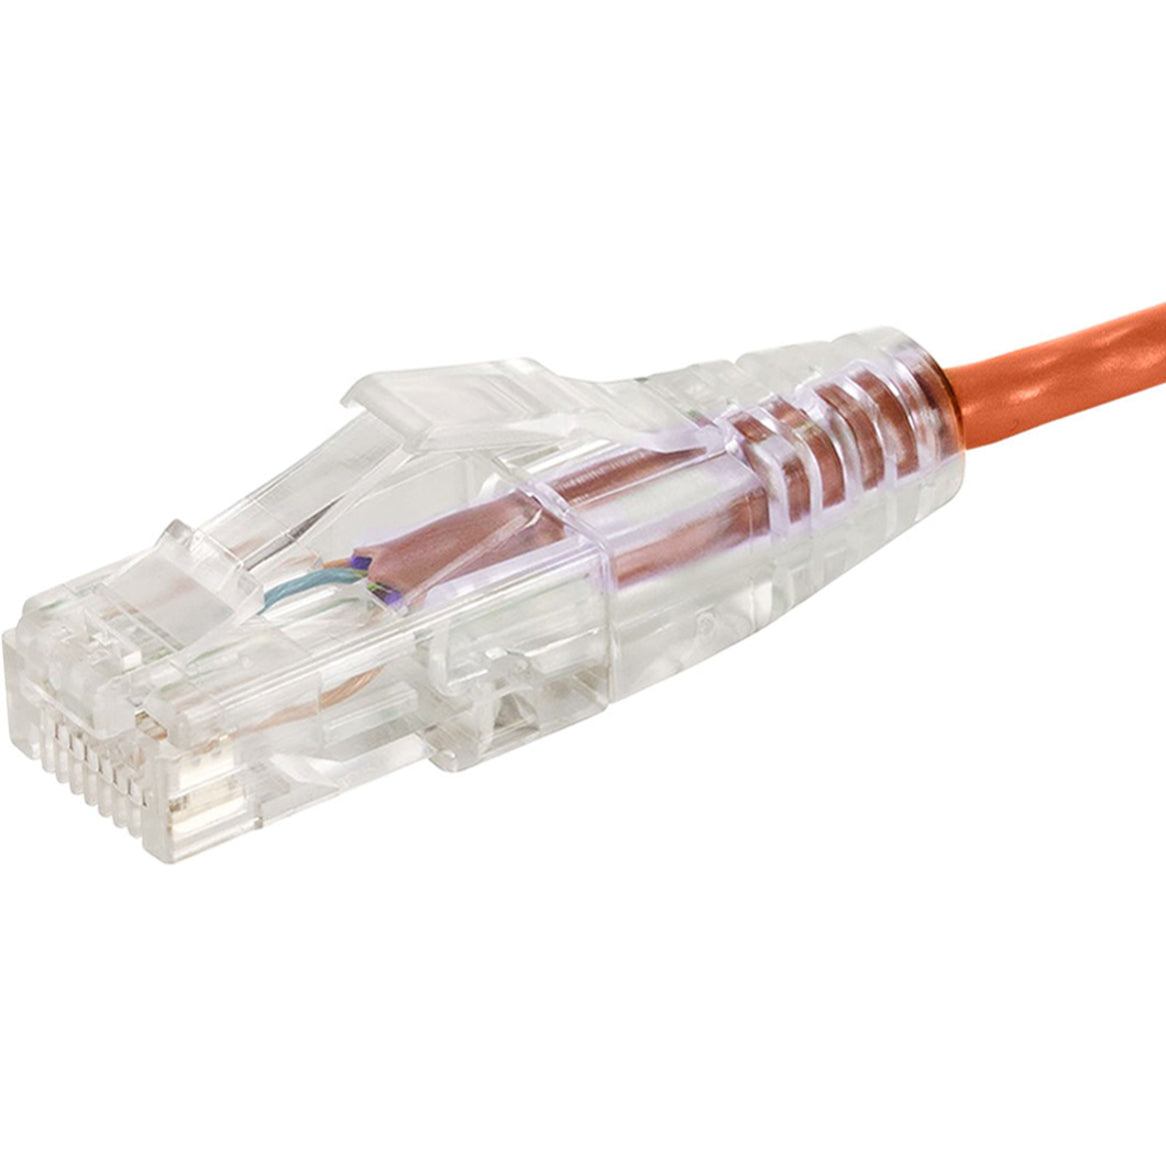 Monoprice 14811 SlimRun Cat6 28AWG UTP Ethernet Network Cable 5ft Orange Monoprice 14811 SlimRun Cat6 28AWG UTP Ethernet Network Cable 5ft Orange